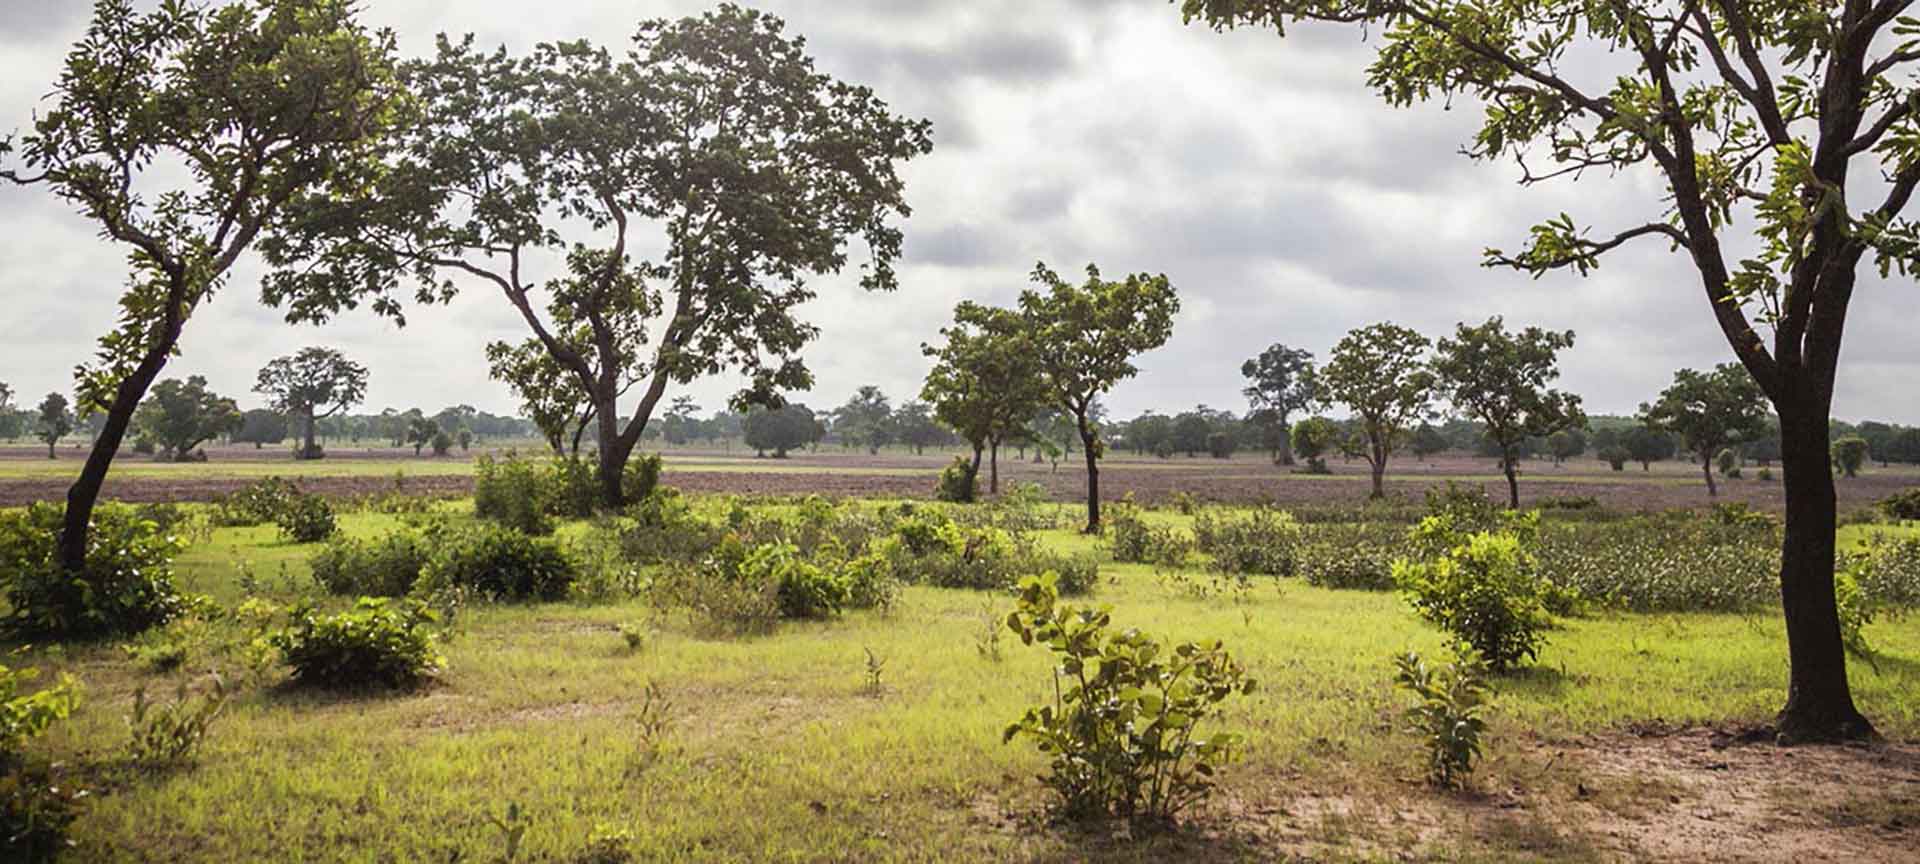 Landscape in Ghana